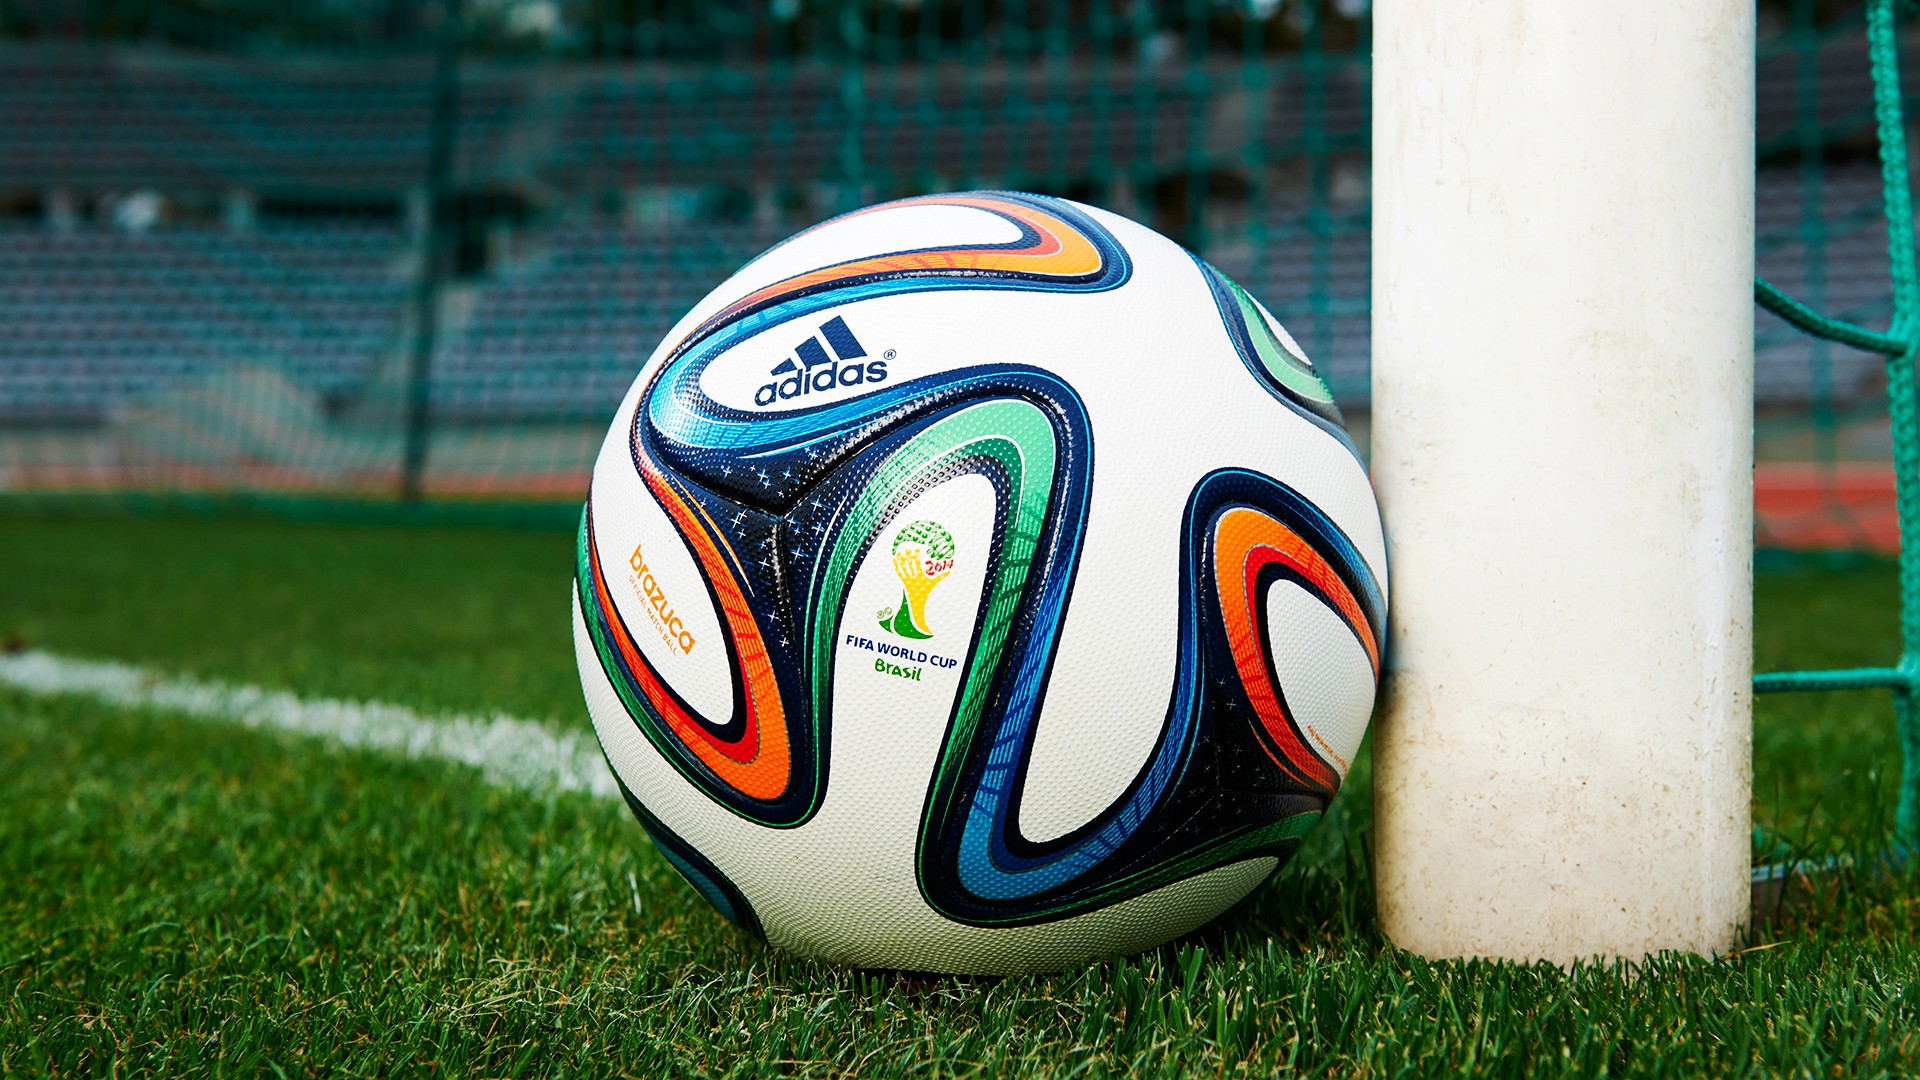 world cup wallpaper,soccer ball,ball,football,grass,sports equipment